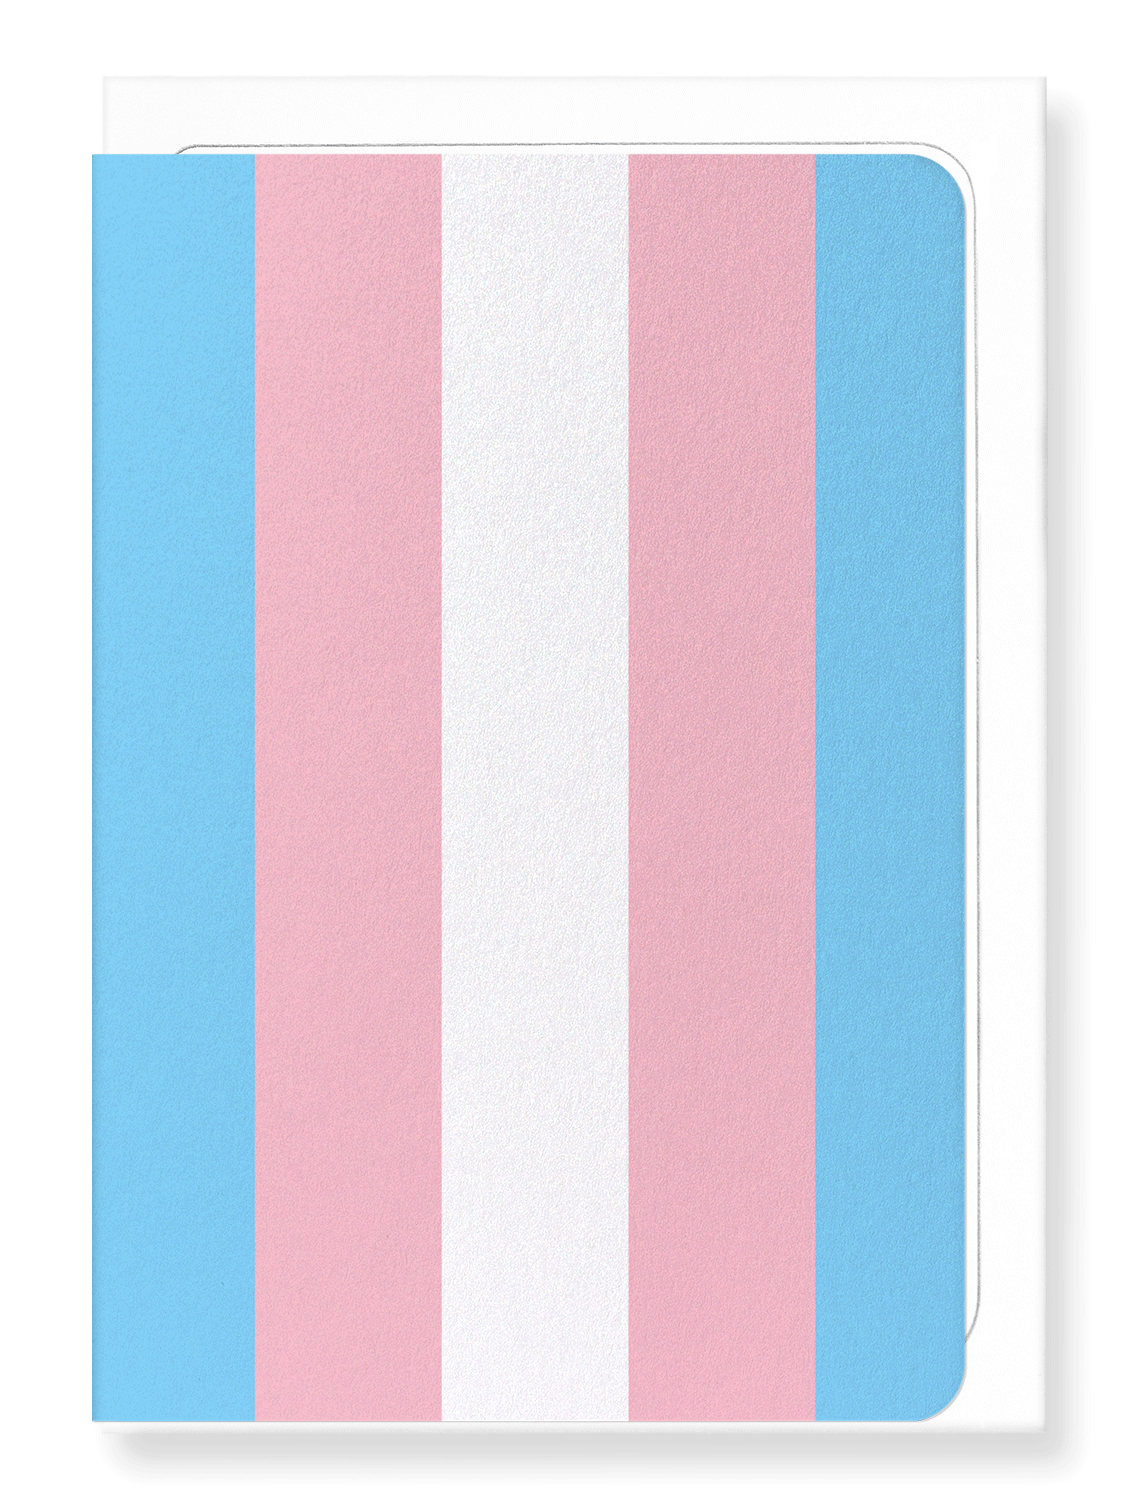 Ezen Designs - Transgender pride flag - Greeting Card - Front